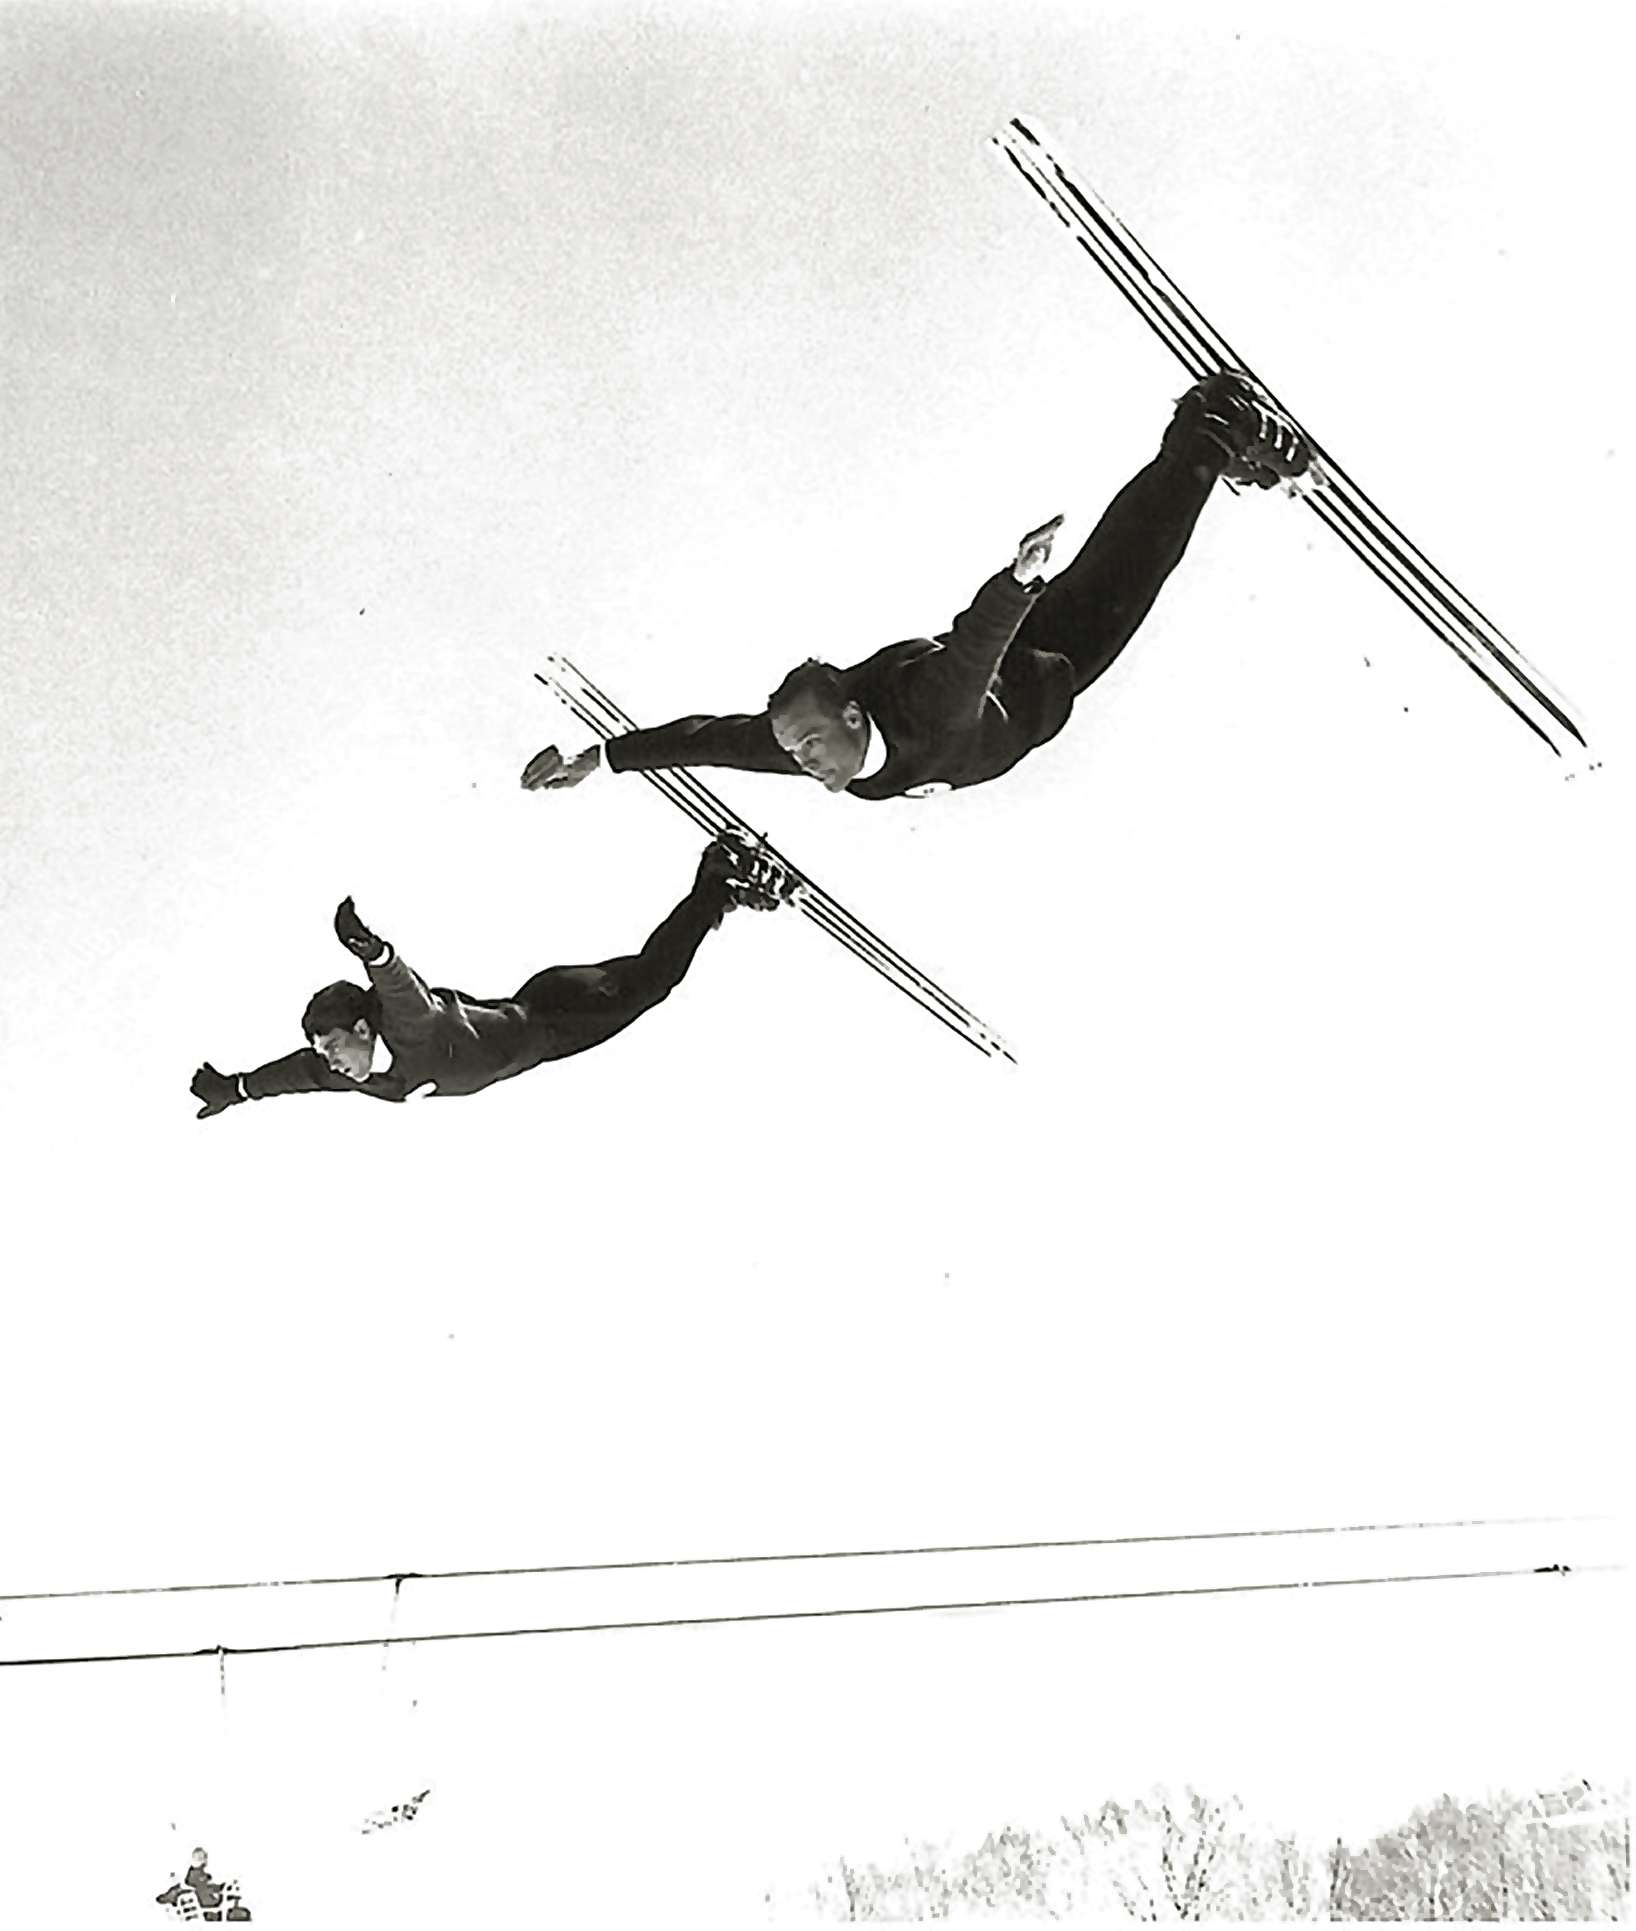 Hermann Goellner A Freestyle Skiing Pioneer pic